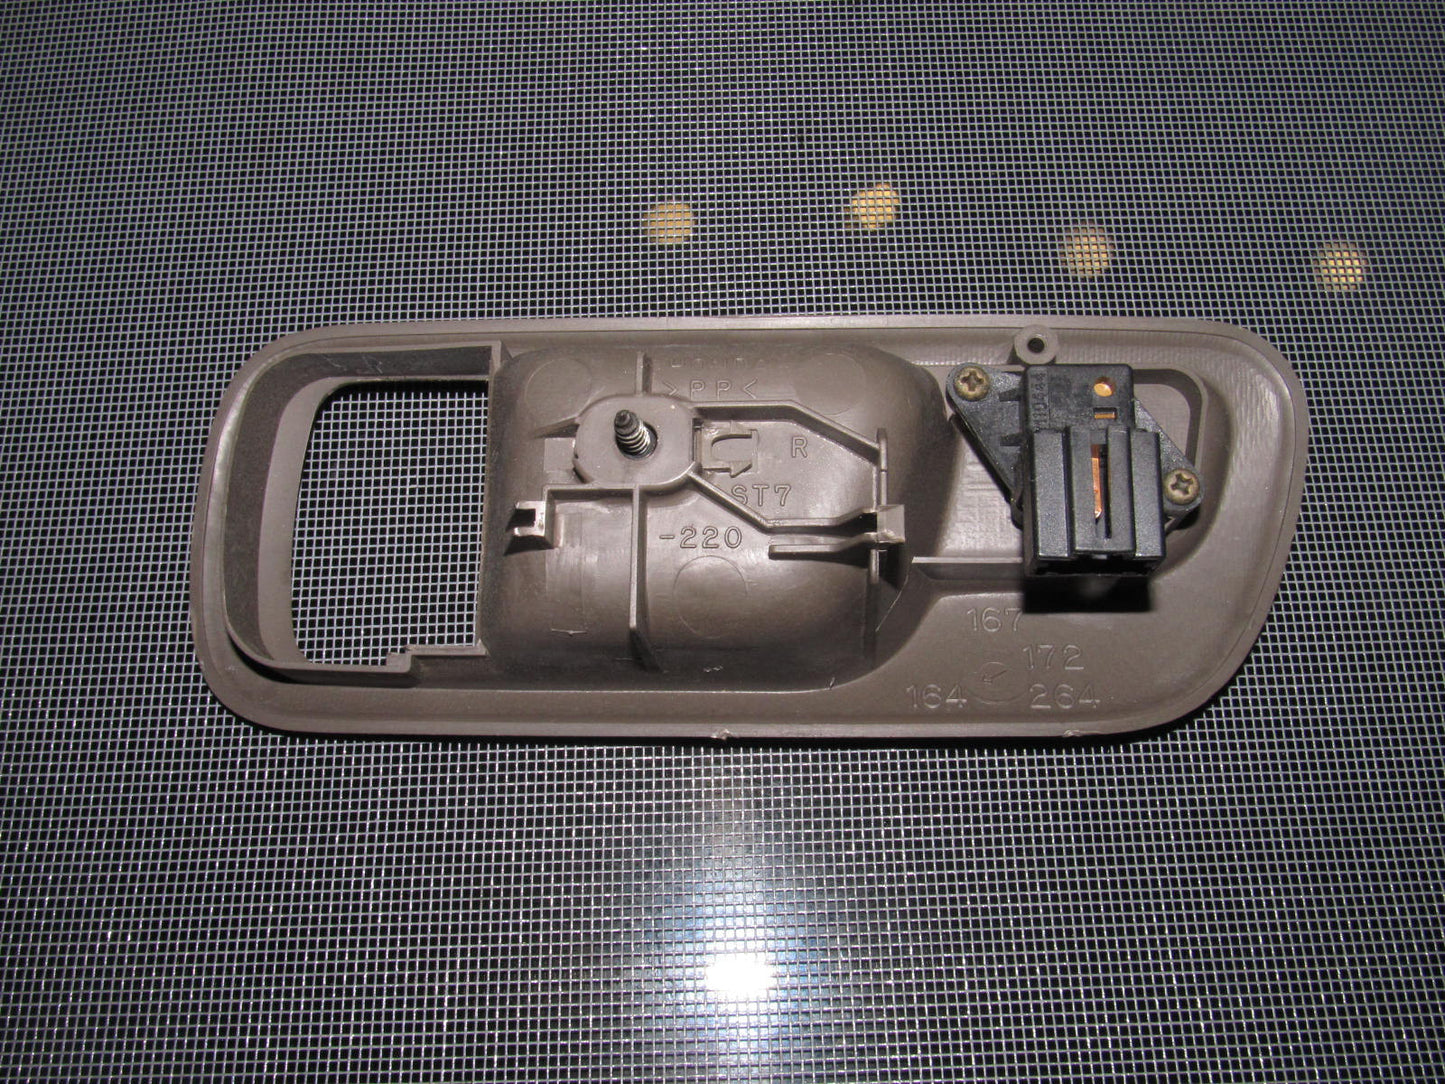 94-01 Acura Integra OEM Brown Door Lock Bezel with Power Door Lock Switch - Passenger's Side - Right